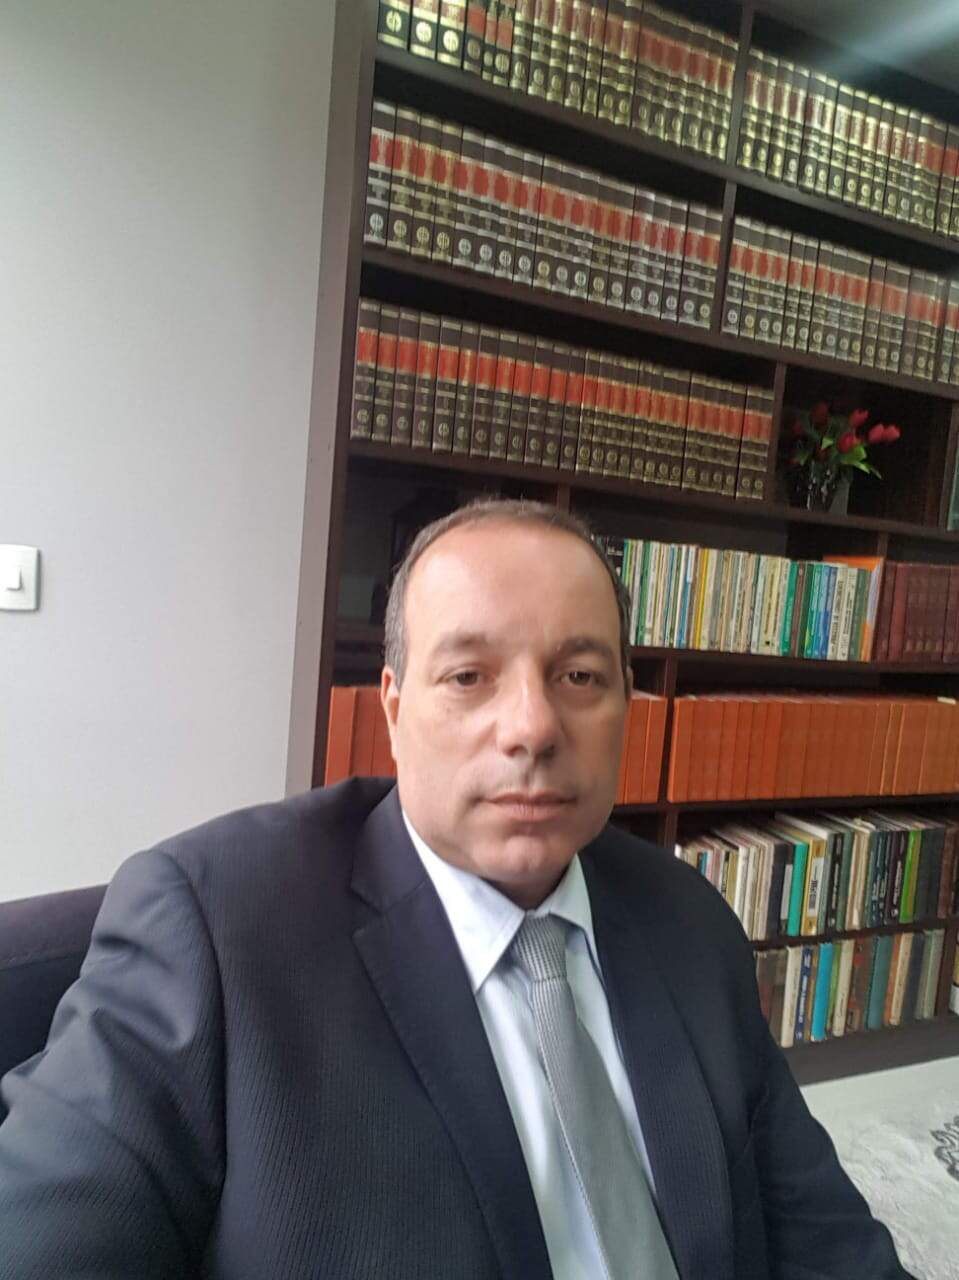 Advogado  de defesa, Fábio Hypolitto, destacou que testemunhas ouvidas não presenciaram crime